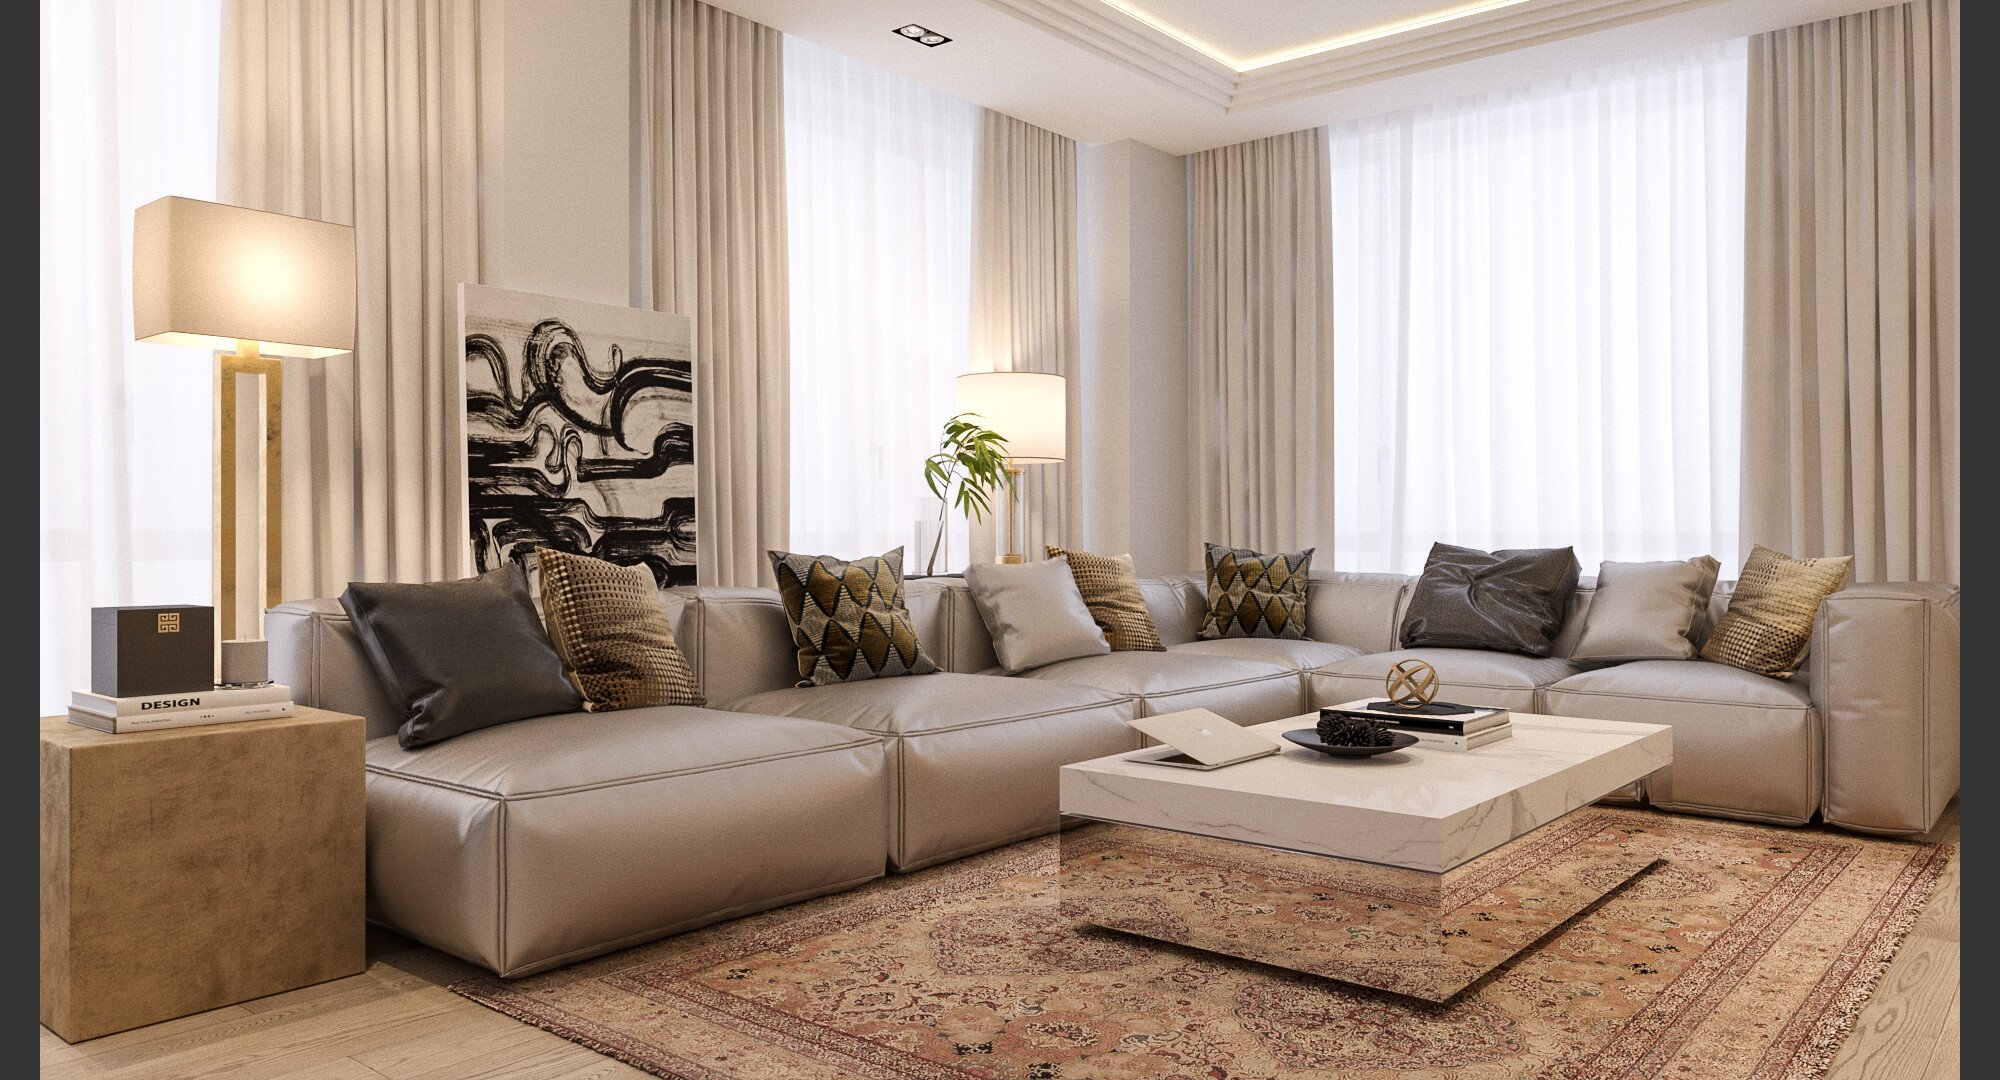 Online Living Room Design interior design service 4